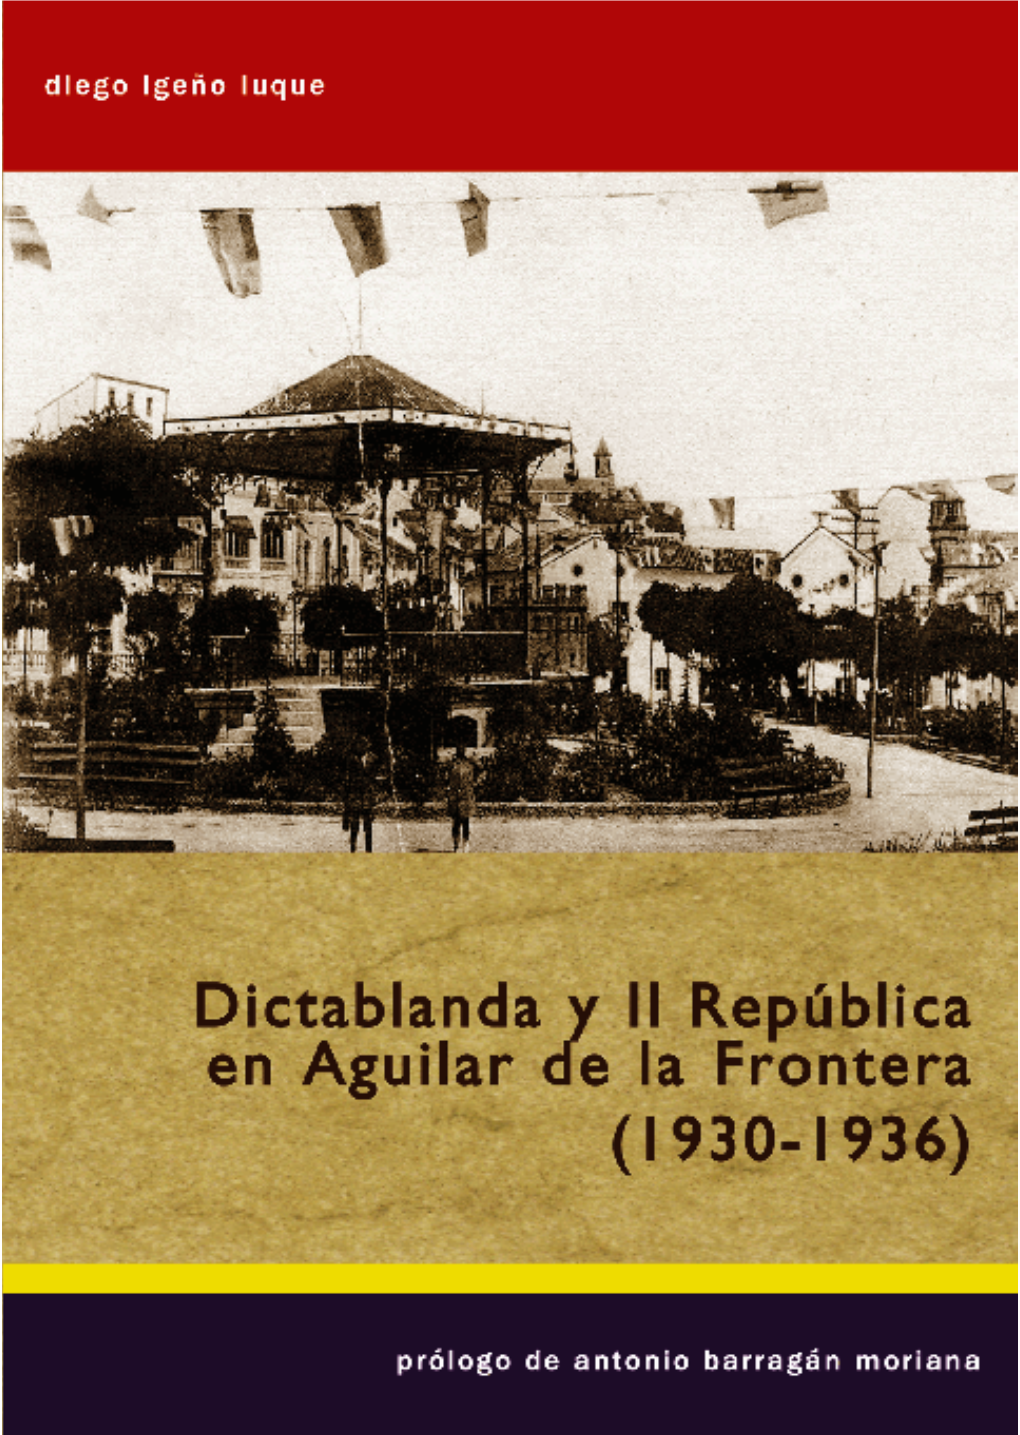 Dictablanda Y Segunda República En Aguilar De La Frontera (1930-1936)